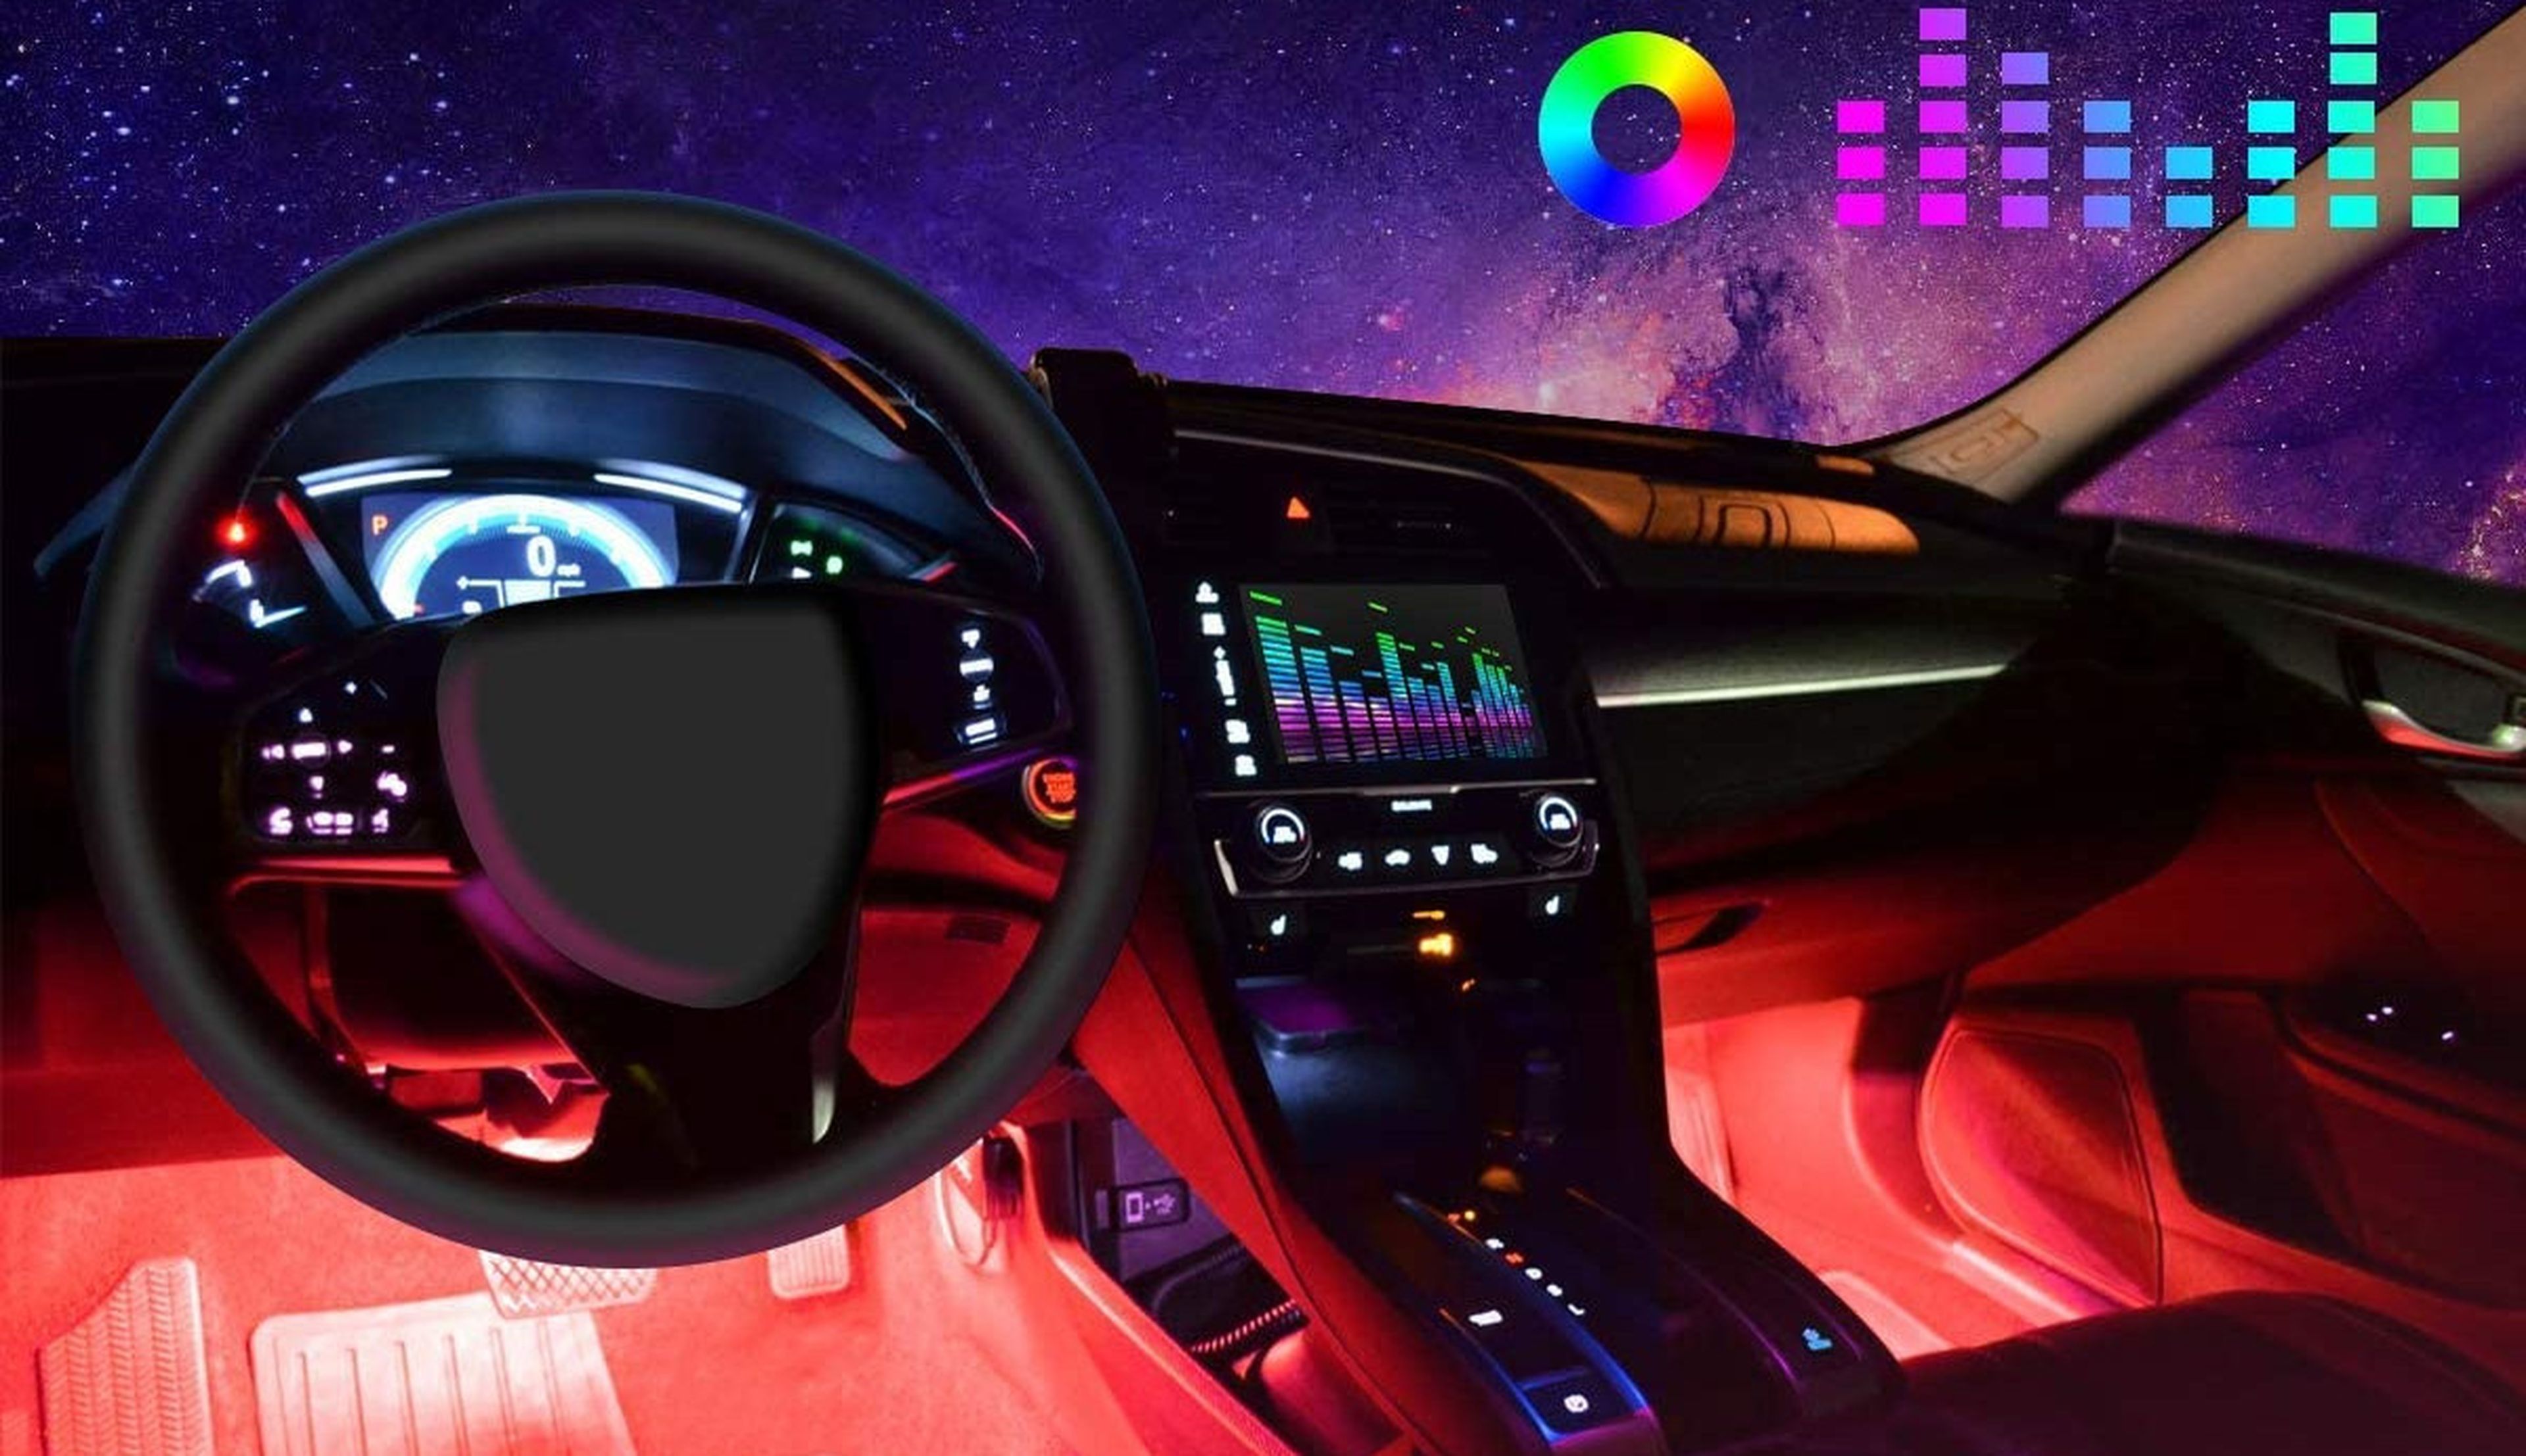 Luces LED interiores para coche 4 tiras Decoración multicolor